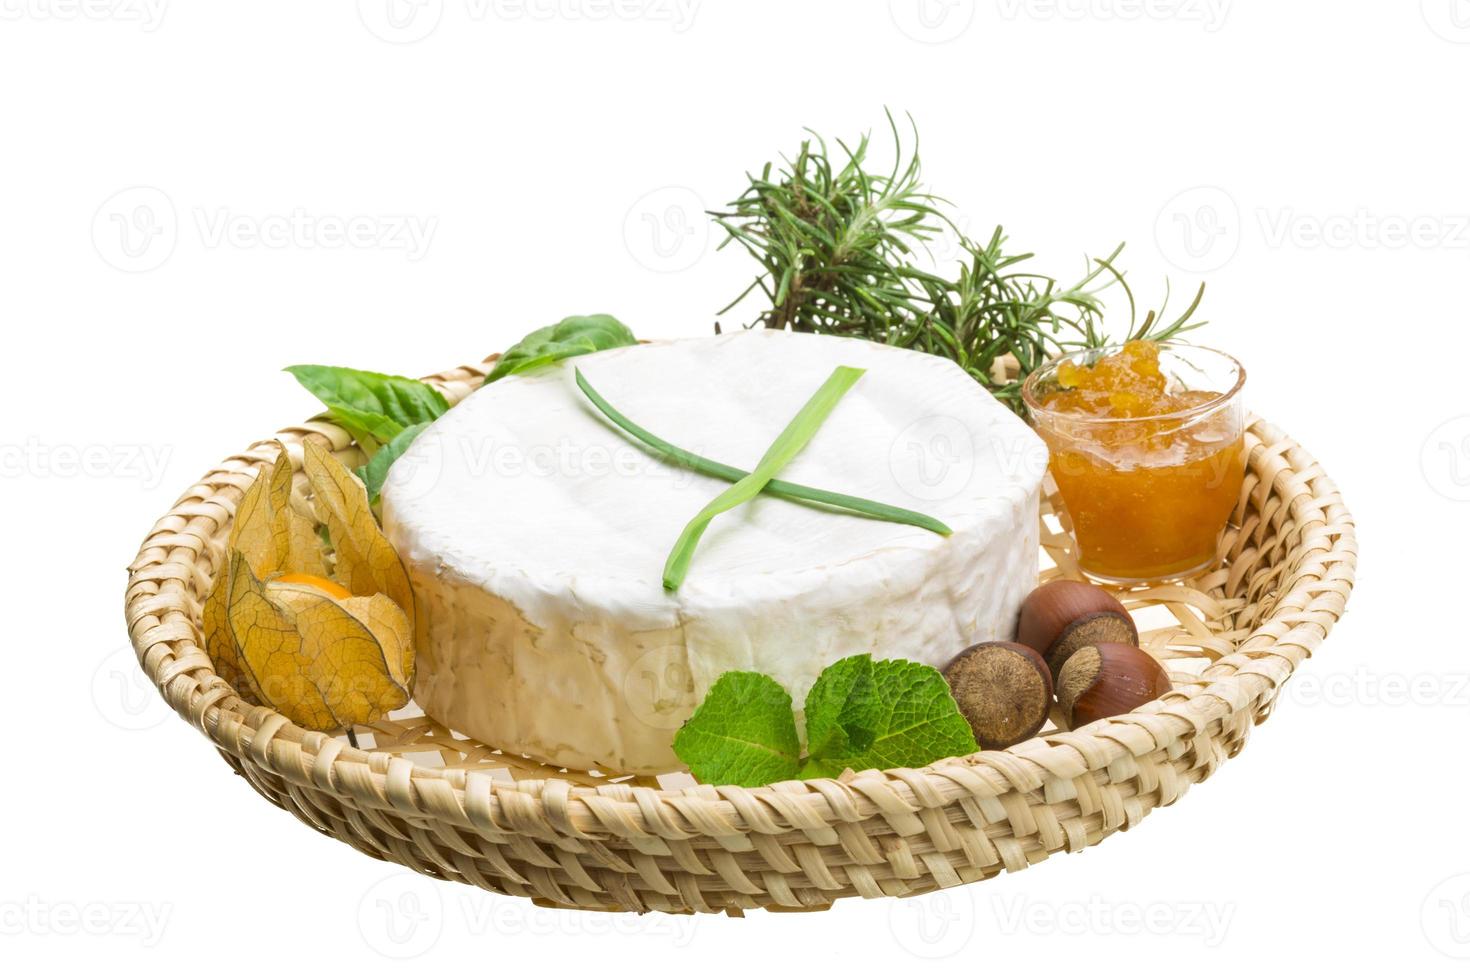 camembert con hierbas, nueces y miel foto